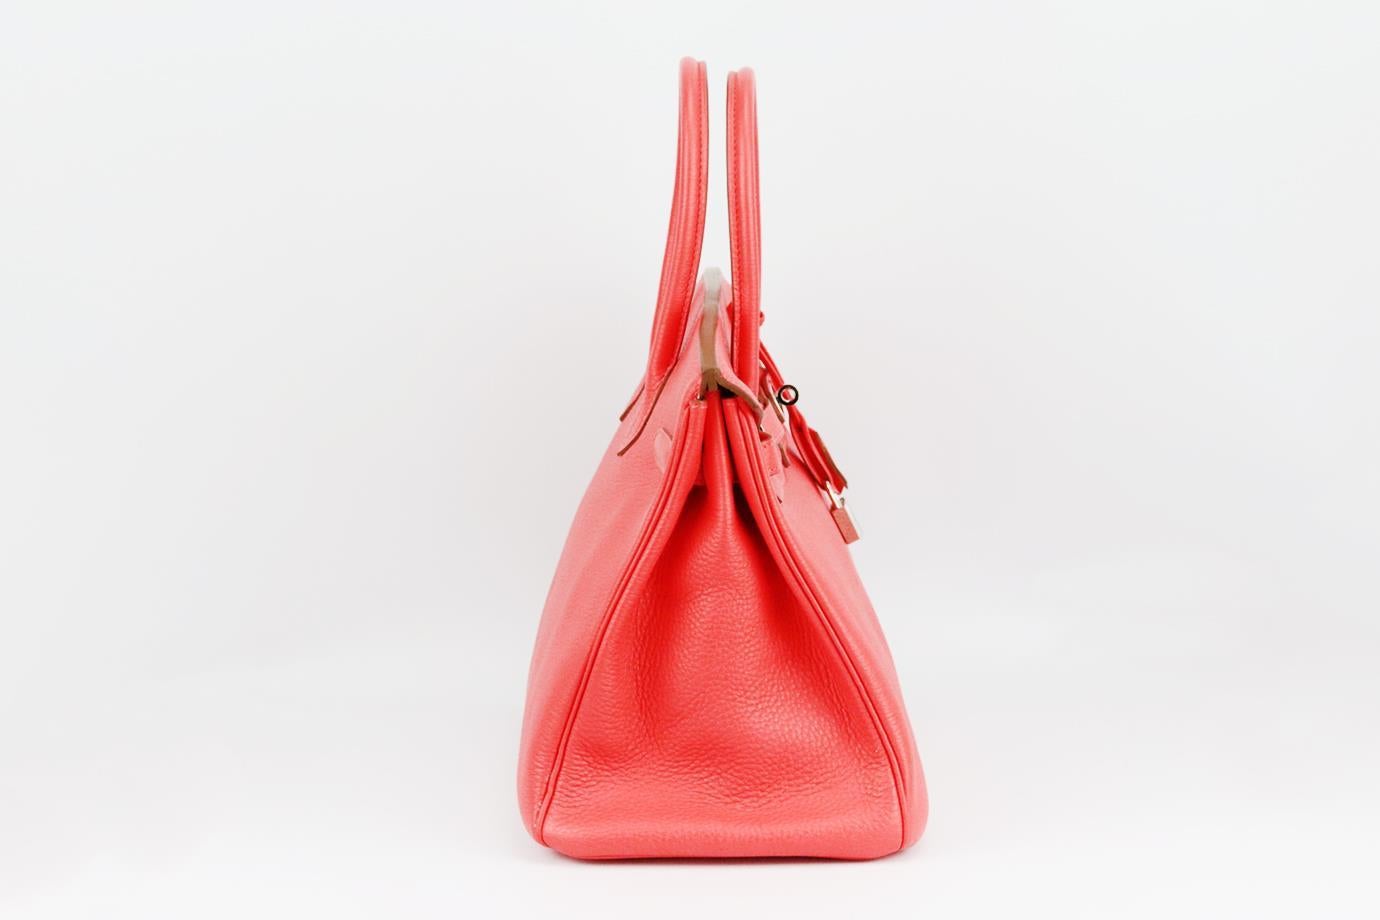 <ul>
<li>Hermès 2012 Birkin 35cm sac en cuir Togo.</li>
<li>Fabriqué en France, ce magnifique sac à main Hermès 'Birkin' 2012 a été réalisé en cuir 'Togo' rouge corail extérieur en 'Rouge Pivoine' avec un intérieur en cuir assorti, cette pièce est